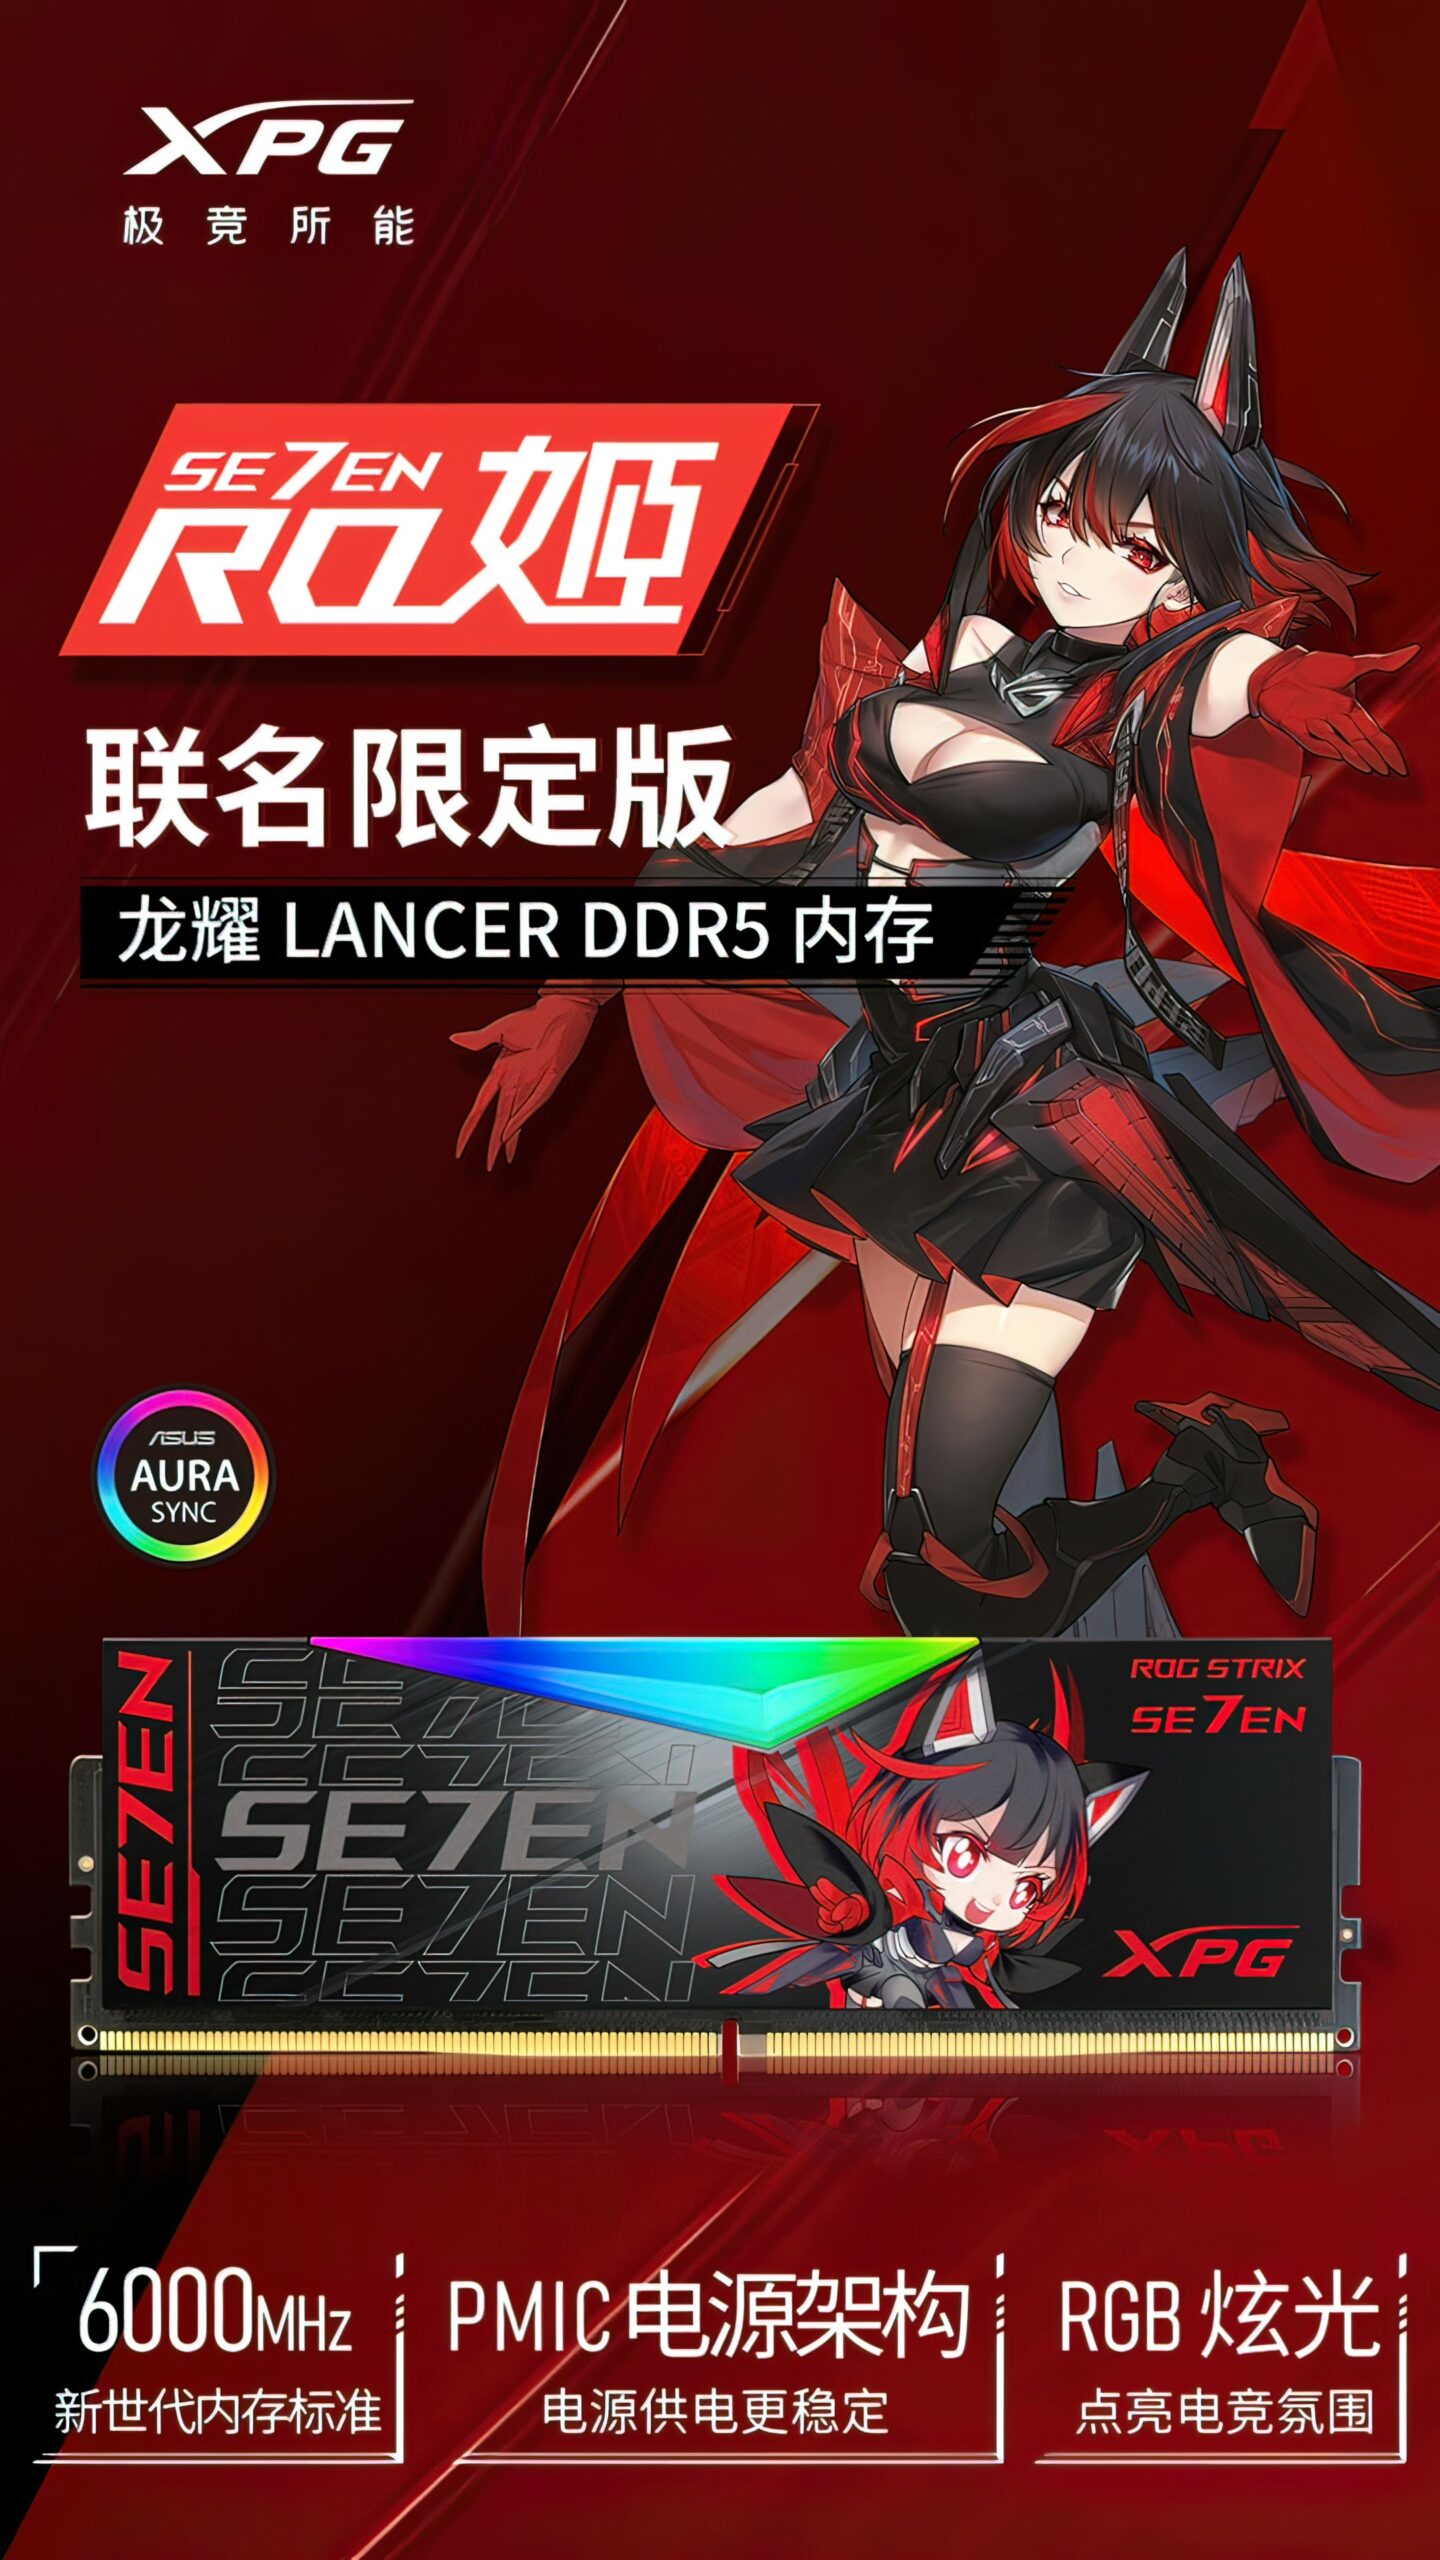 ADATA XPG ASUS DDR5 Anime Memory 1 Custom scaled 1 MMOSITE - Thông tin công nghệ, review, thủ thuật PC, gaming